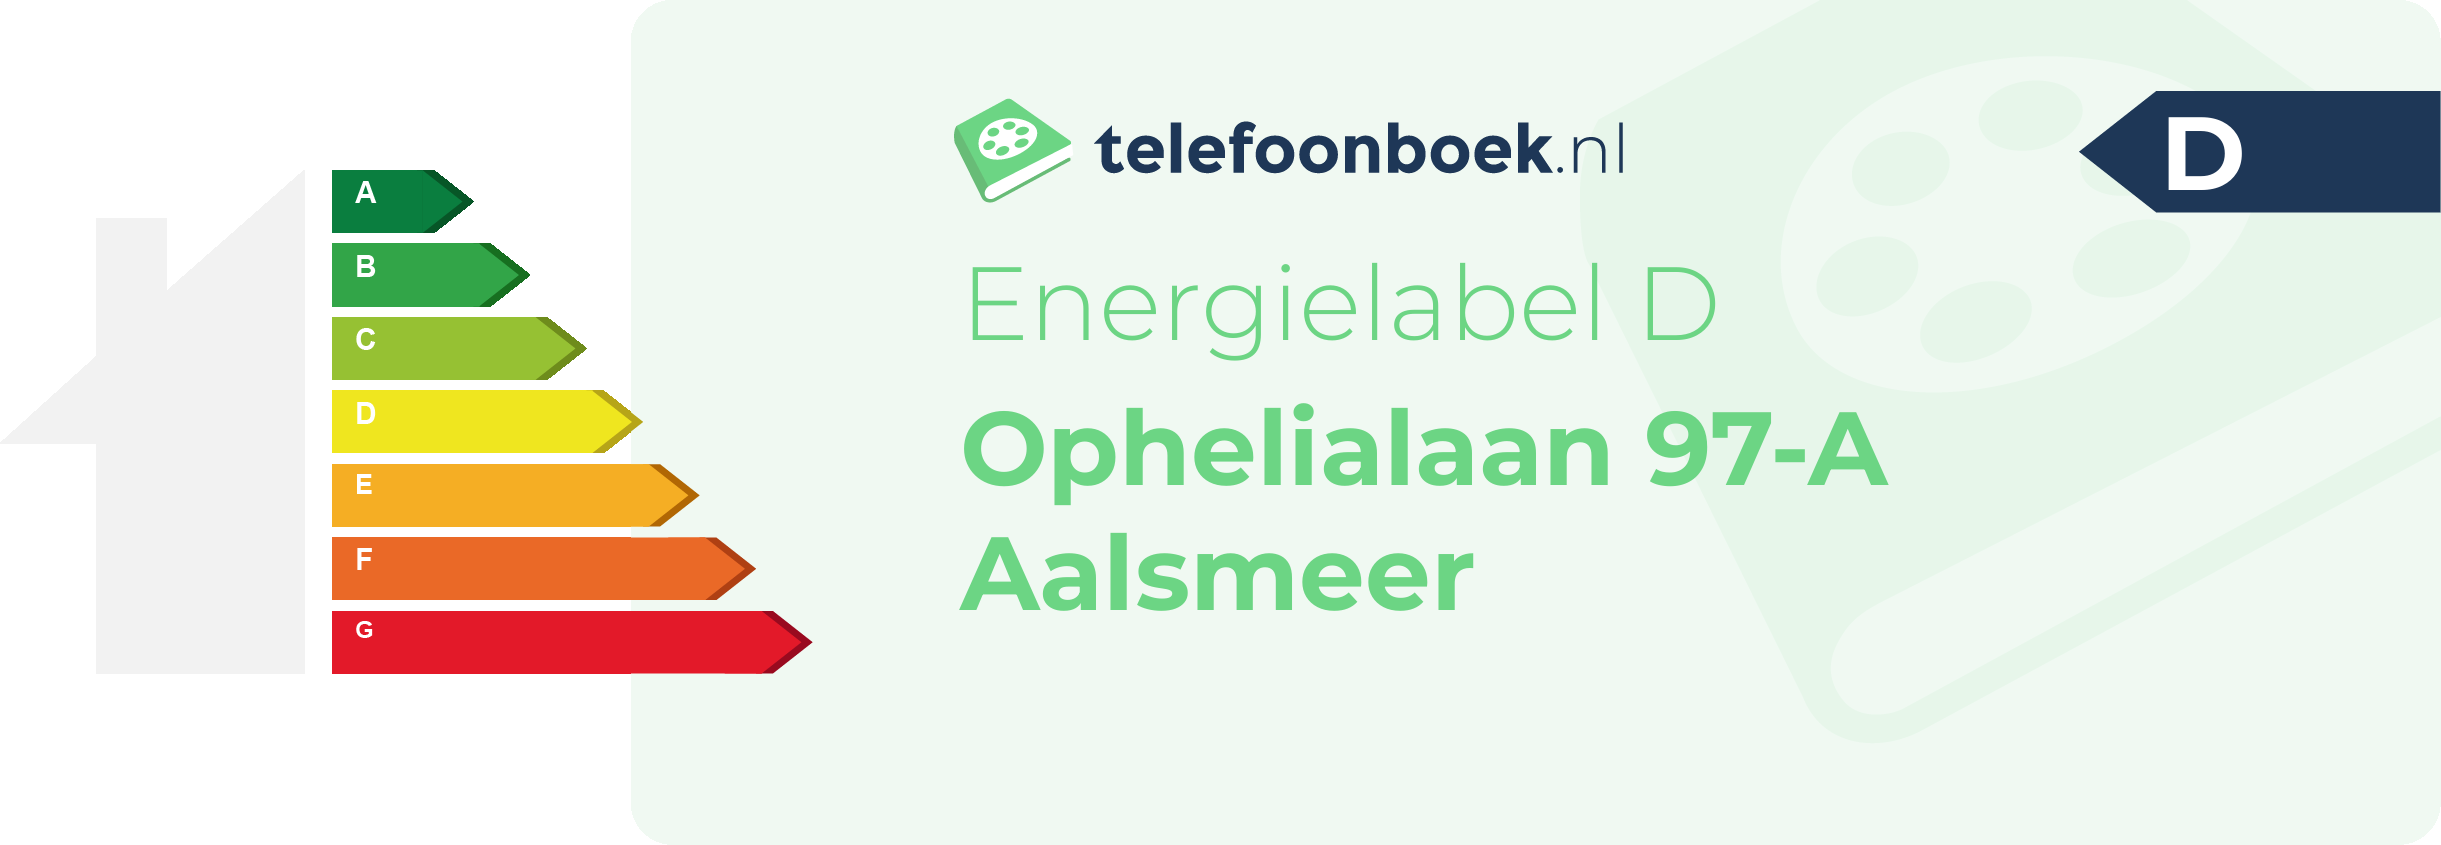 Energielabel Ophelialaan 97-A Aalsmeer